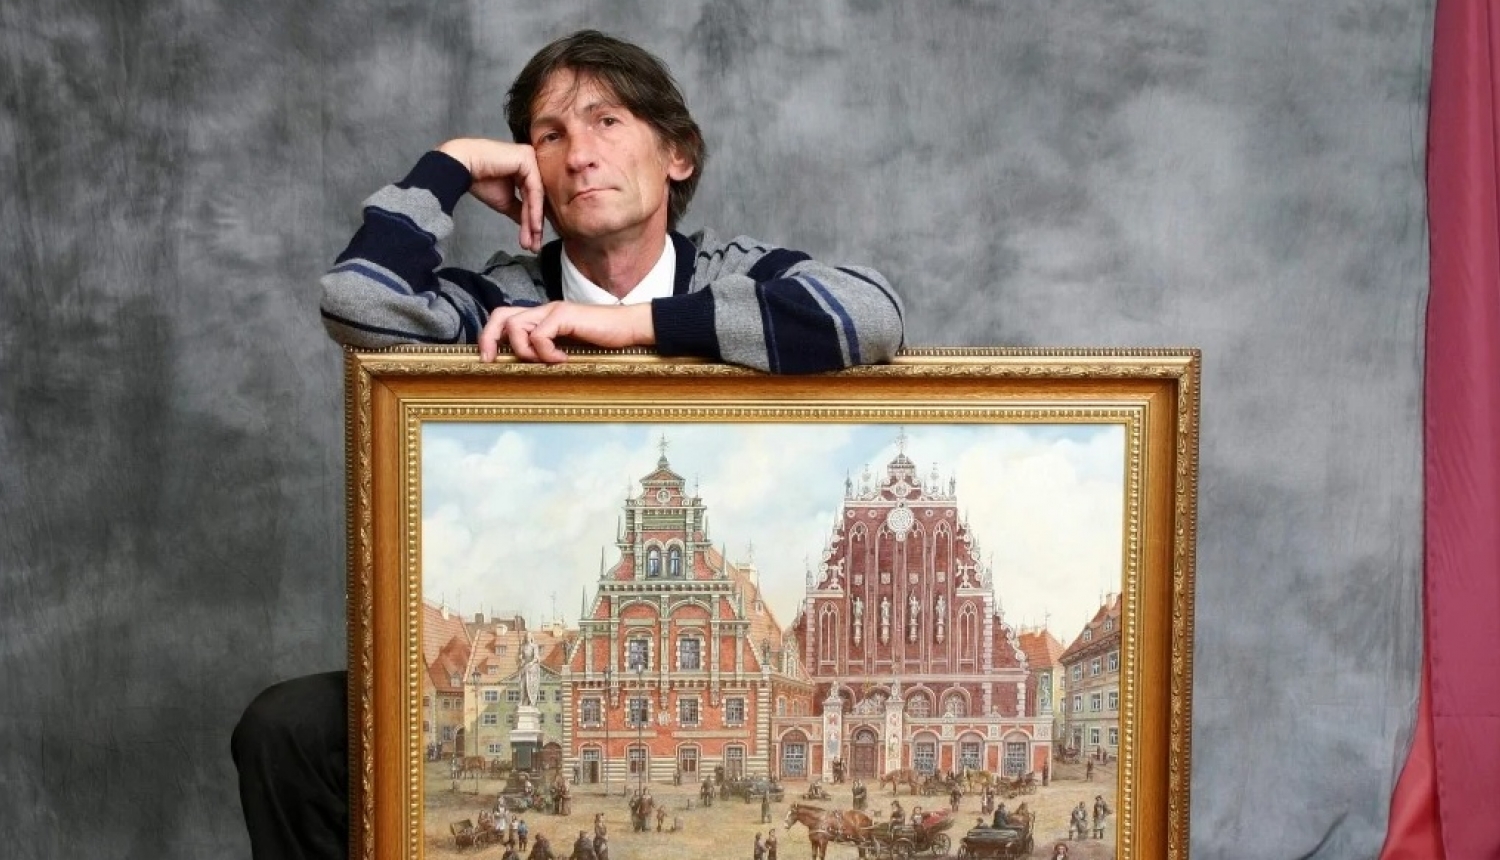 Mākslinieks Sergejs Zinovjevs ar gleznu no izstādes “Mana Rīga”